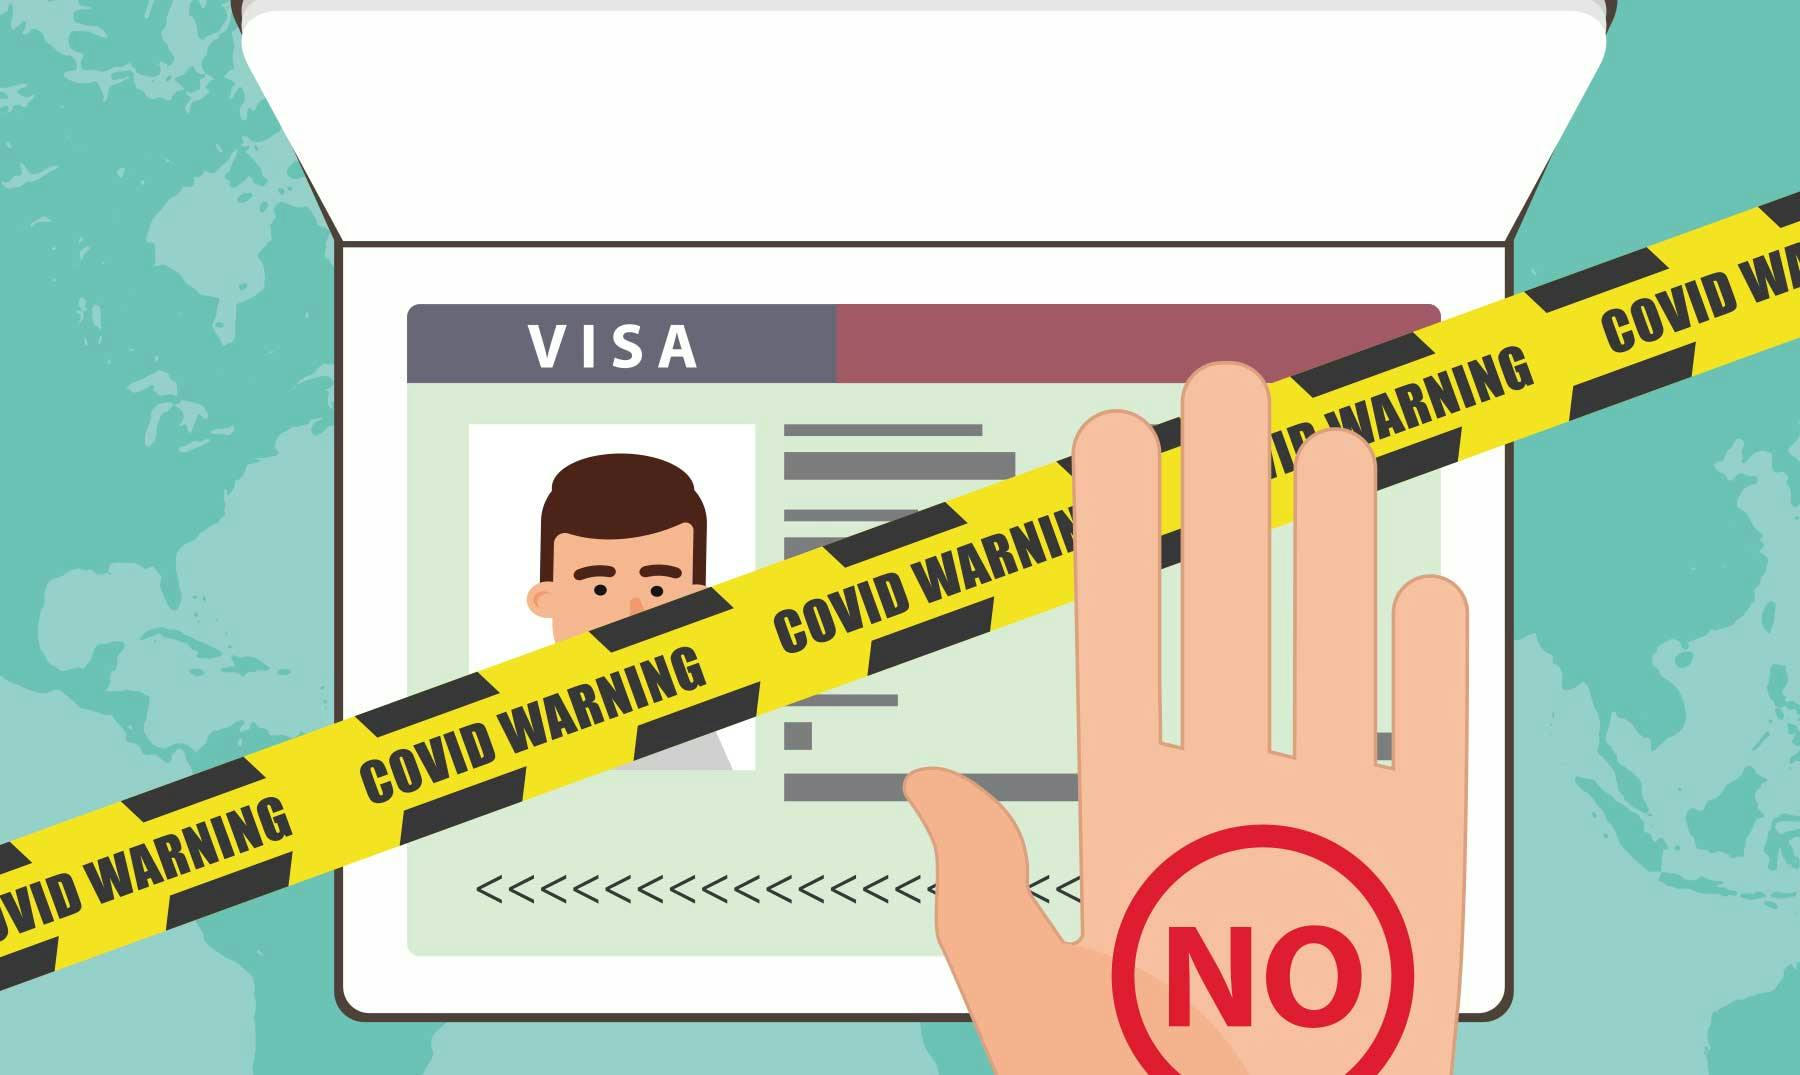 Prohibiciones de viaje y el estatus de las visas para Australia debido al COVID-19